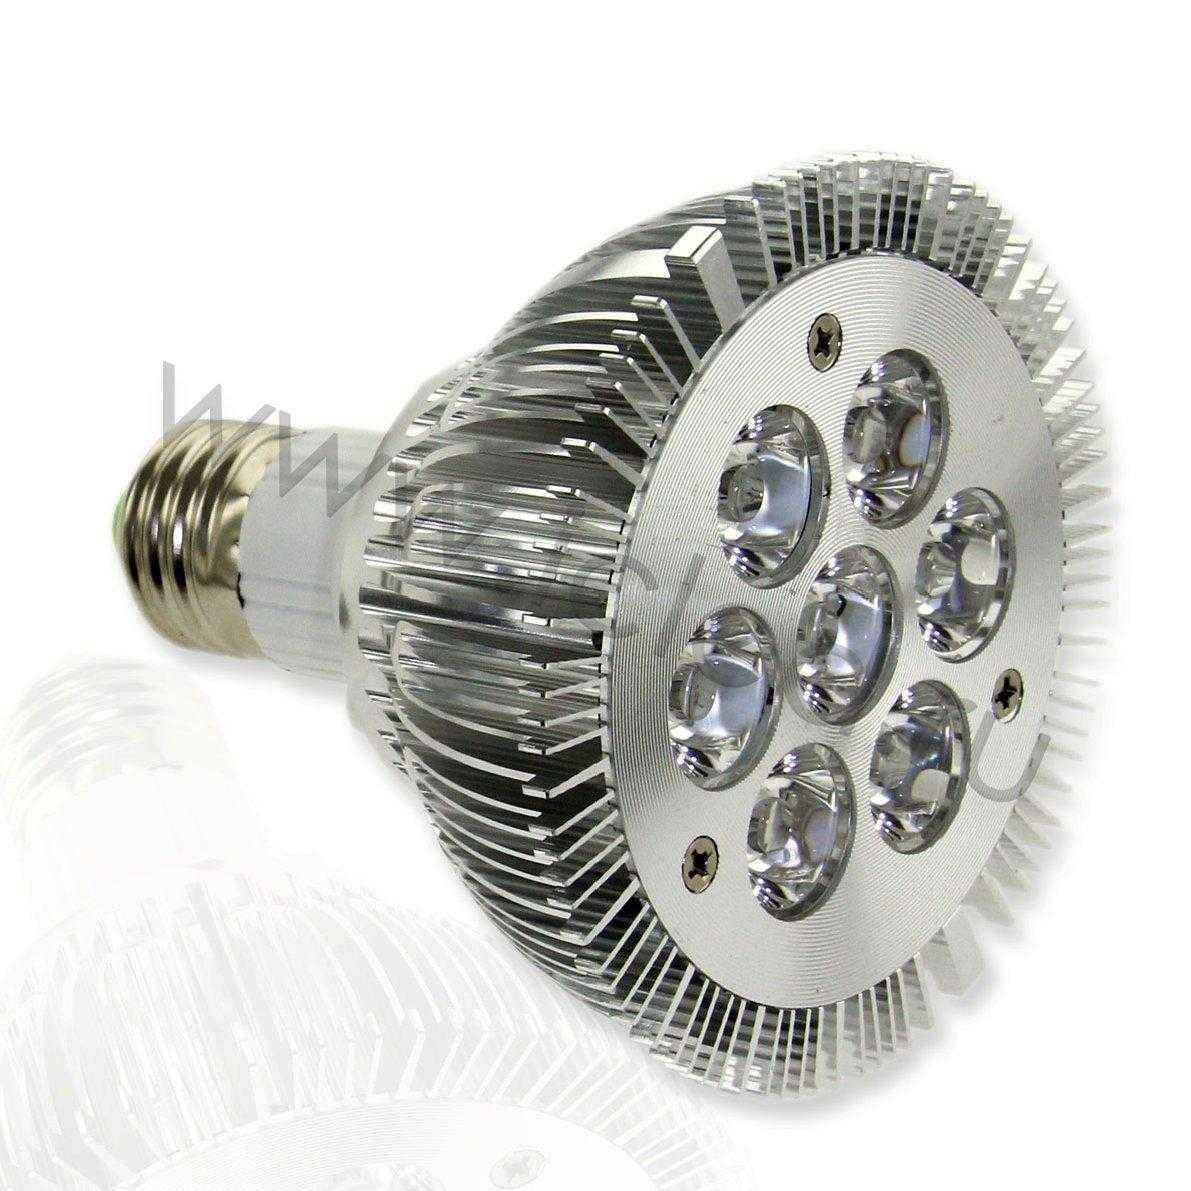 Светодиодная лампа Алмаз-7